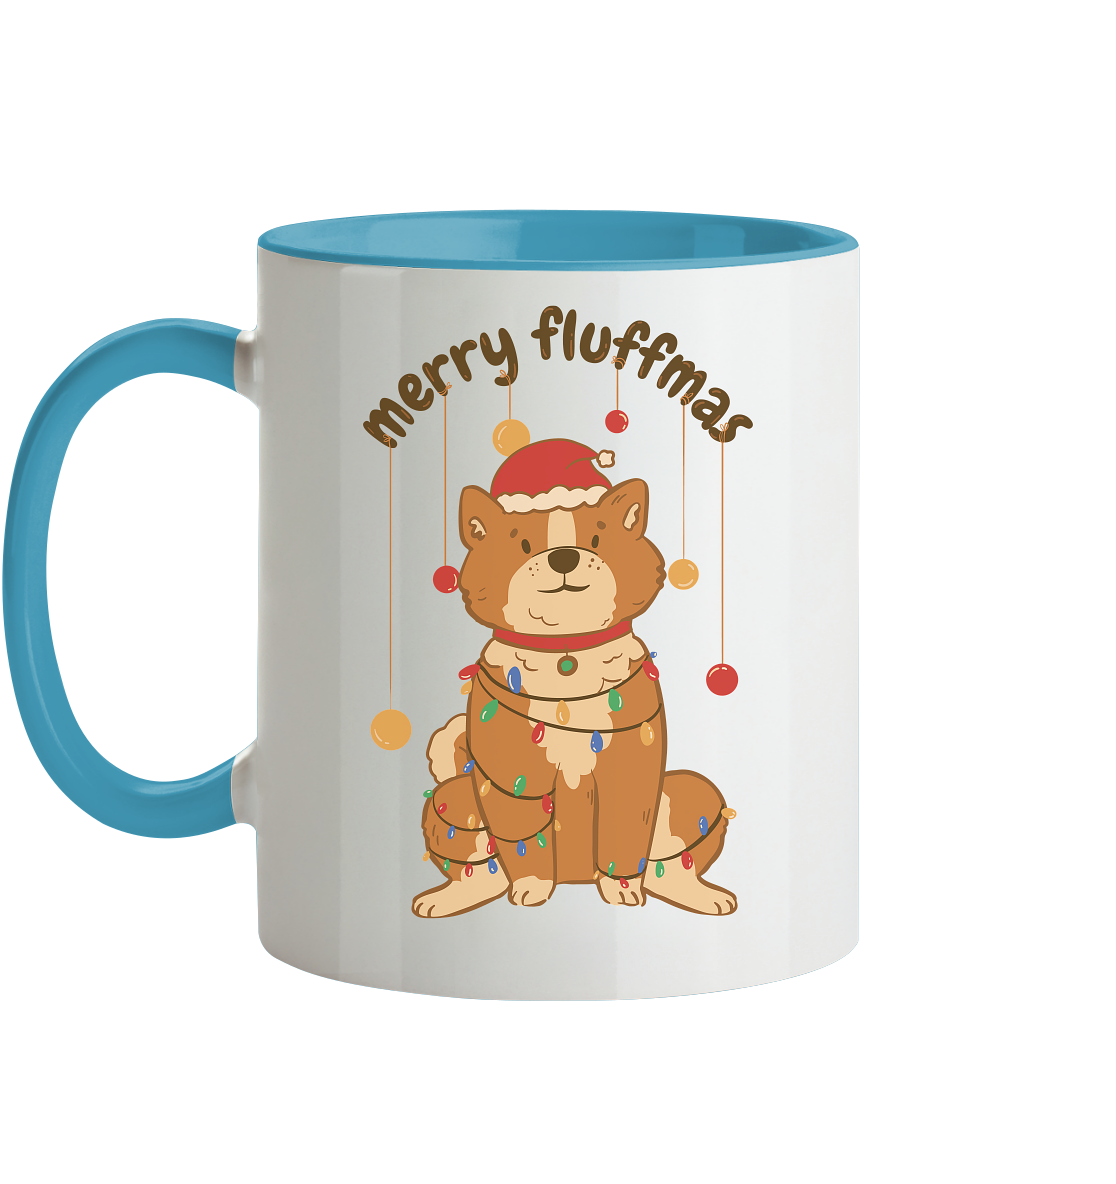 Weihnachtliches Motiv Fun Merry Fluffmas - Tasse zweifarbig